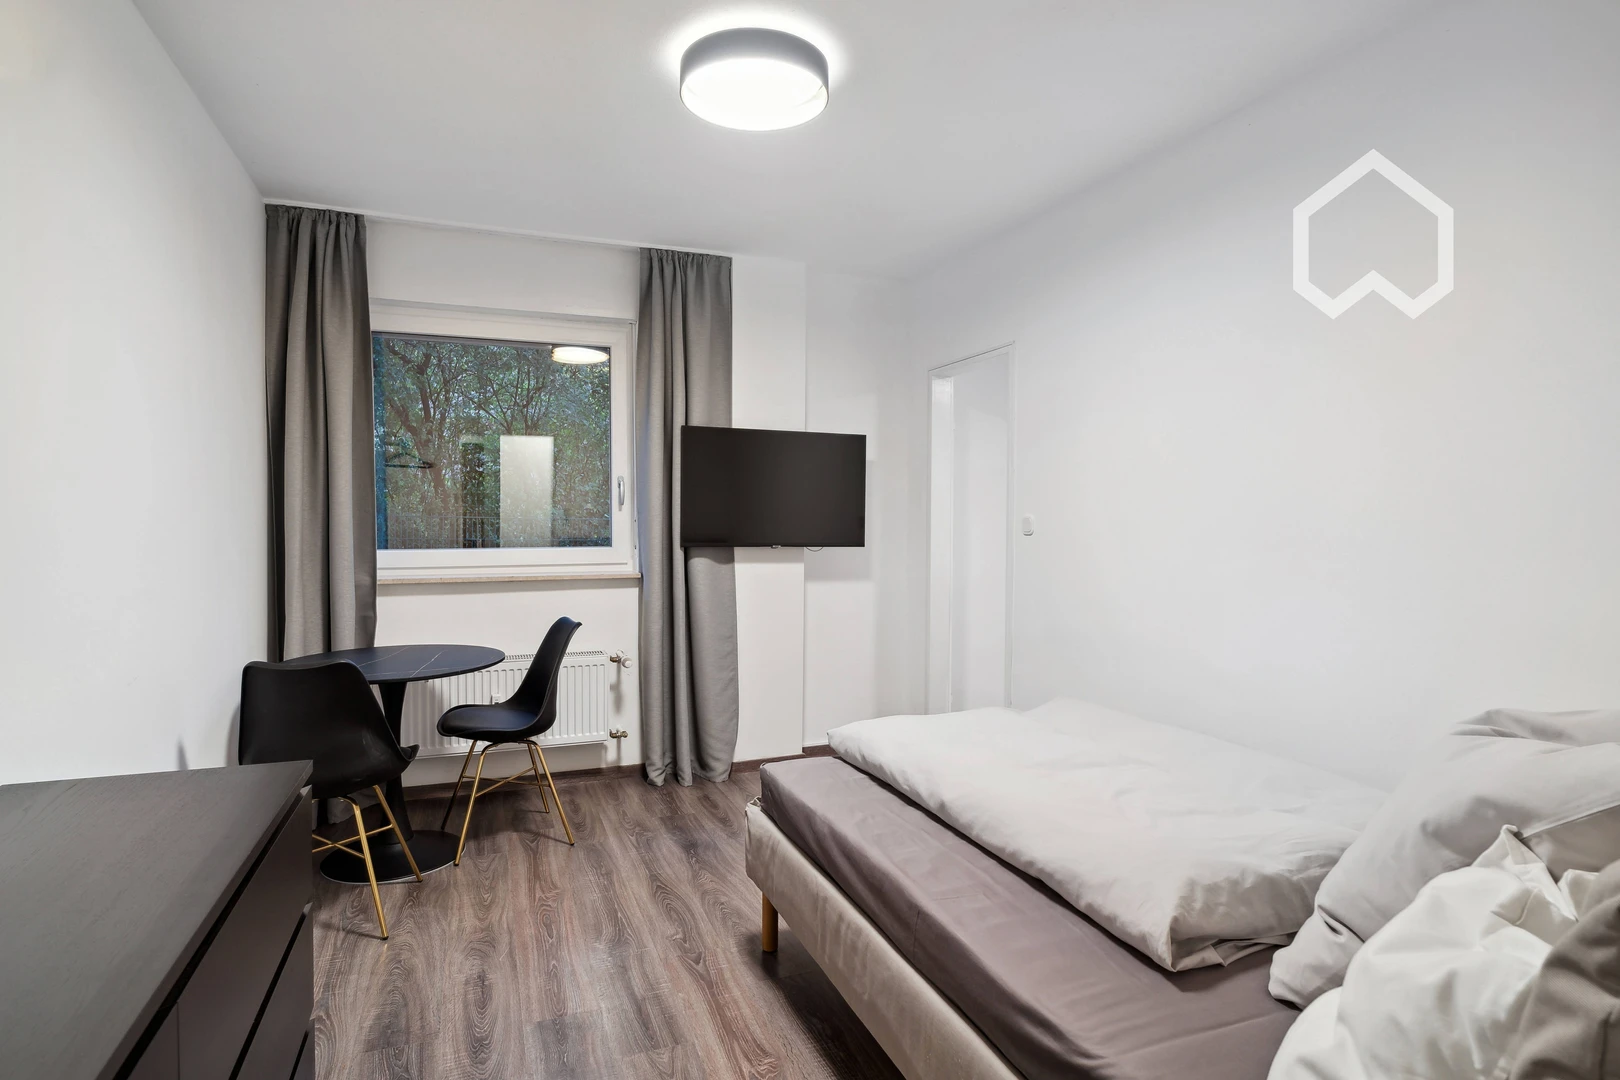 Alquiler de habitación en piso compartido en frankfurt